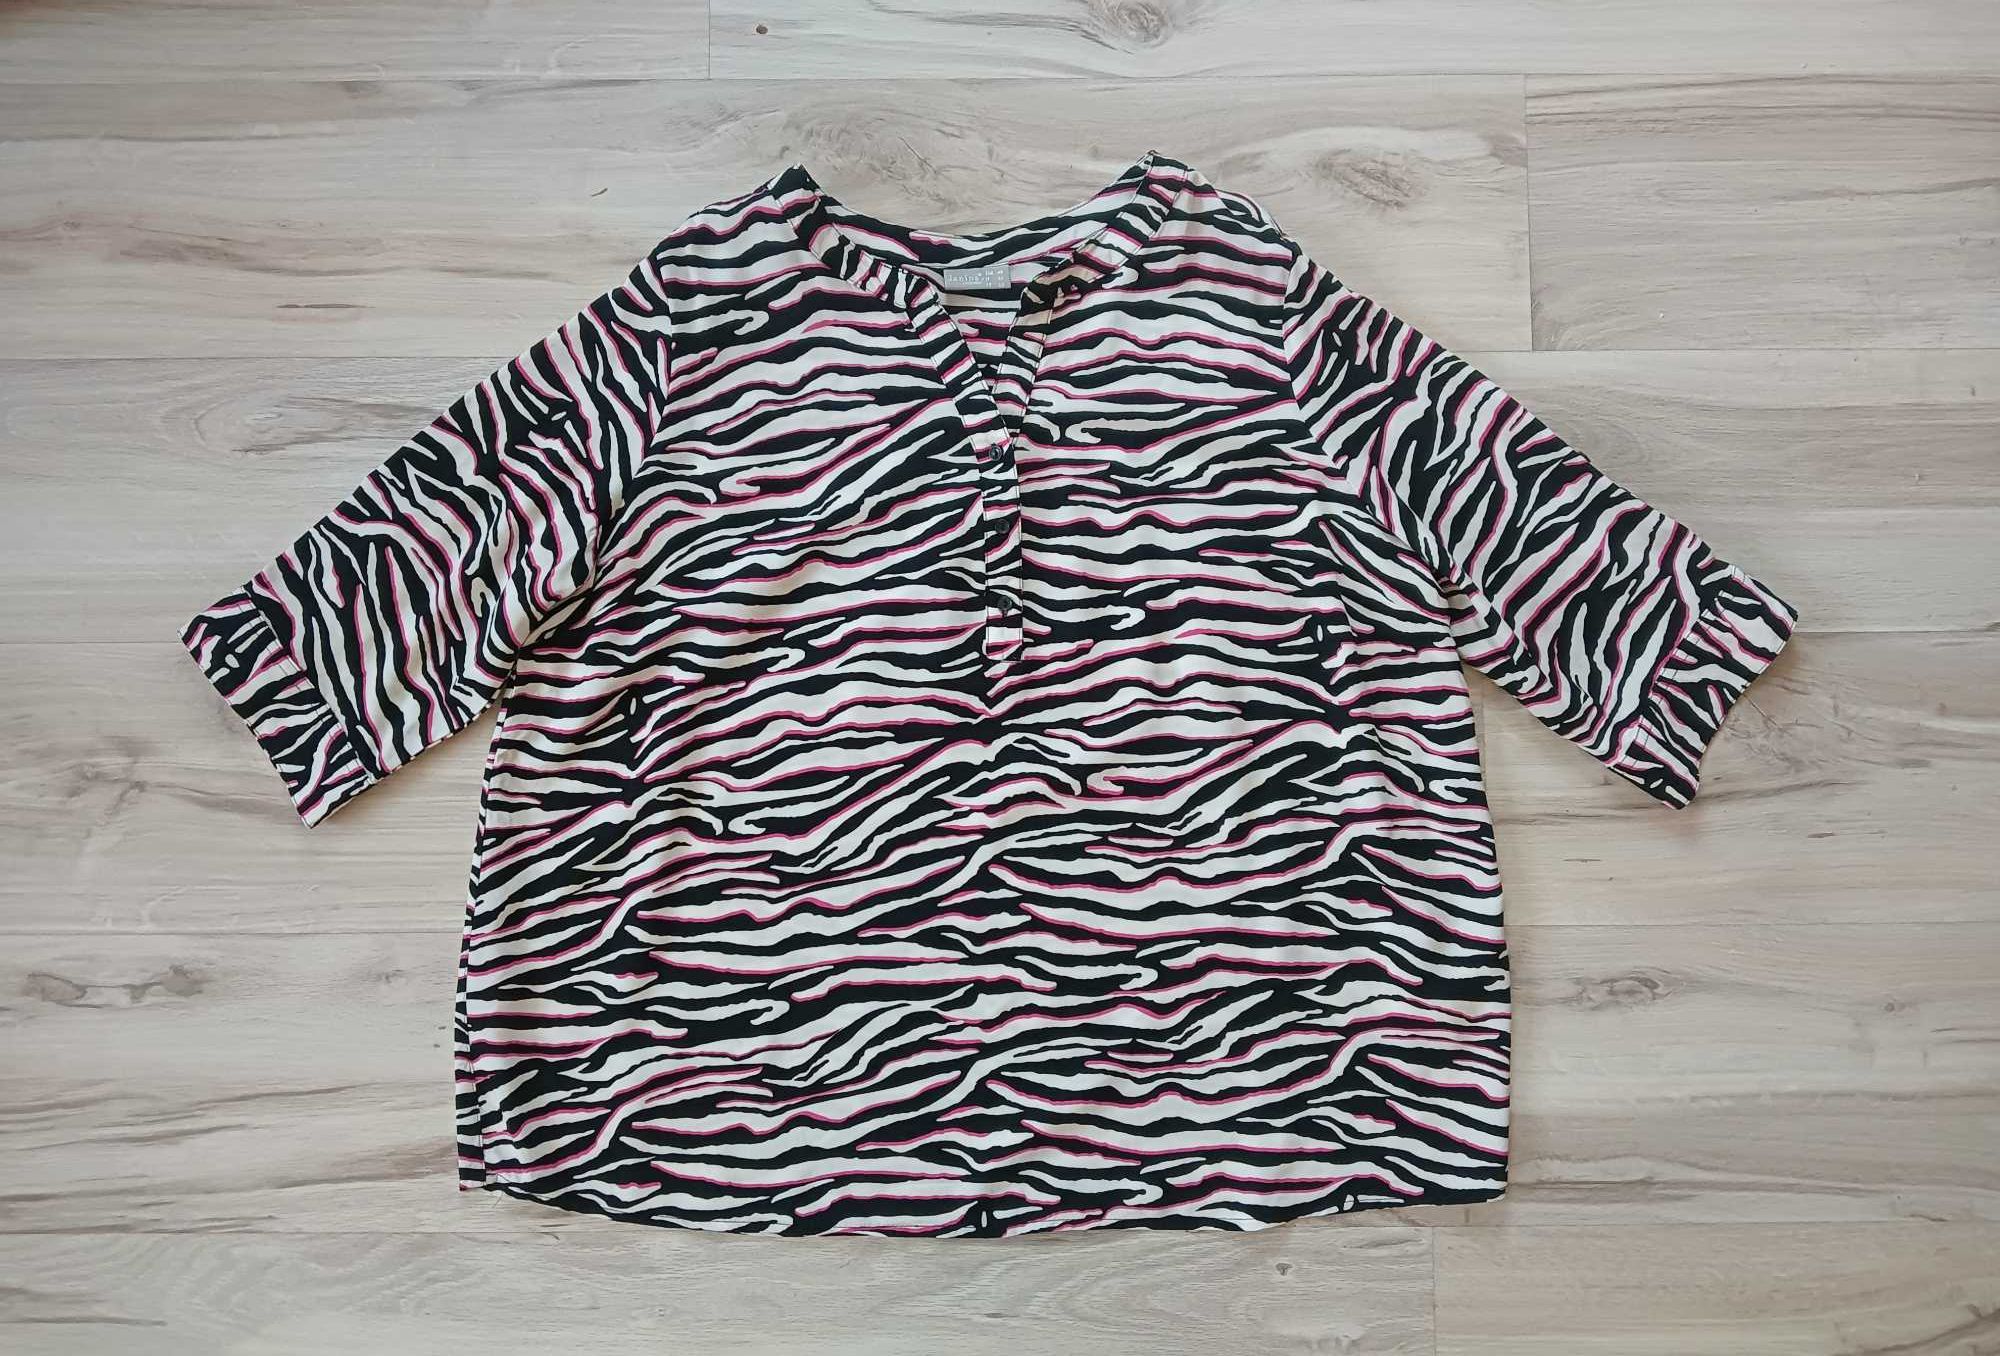 Damska, przewiewna bluzka, wzór zebra r. 48